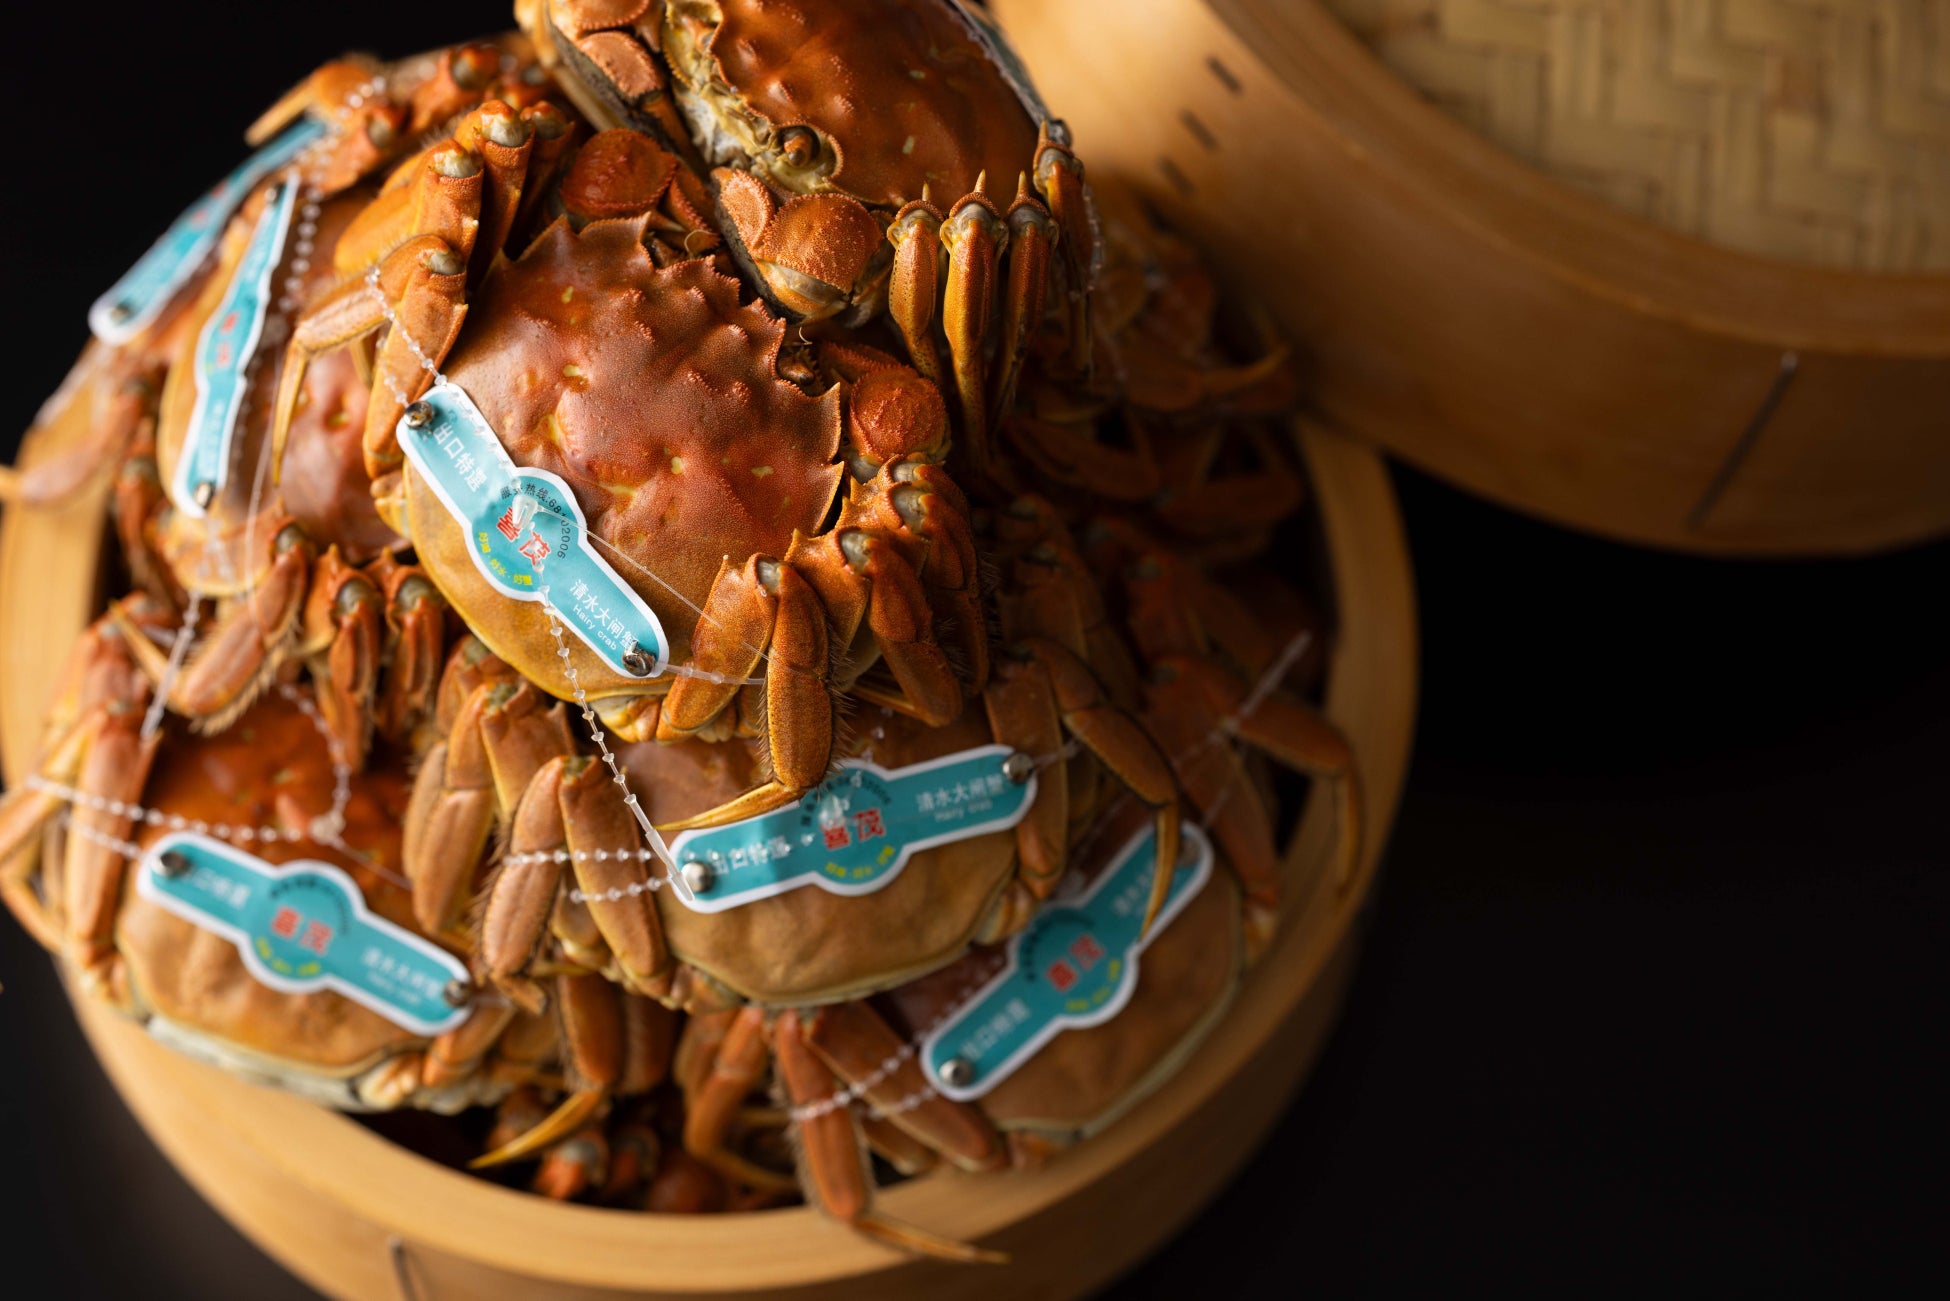 【ザ・キャピトルホテル 東急】秋の風物詩 “上海蟹” を味わい尽くす贅を極めた「上海蟹コース」が初登場